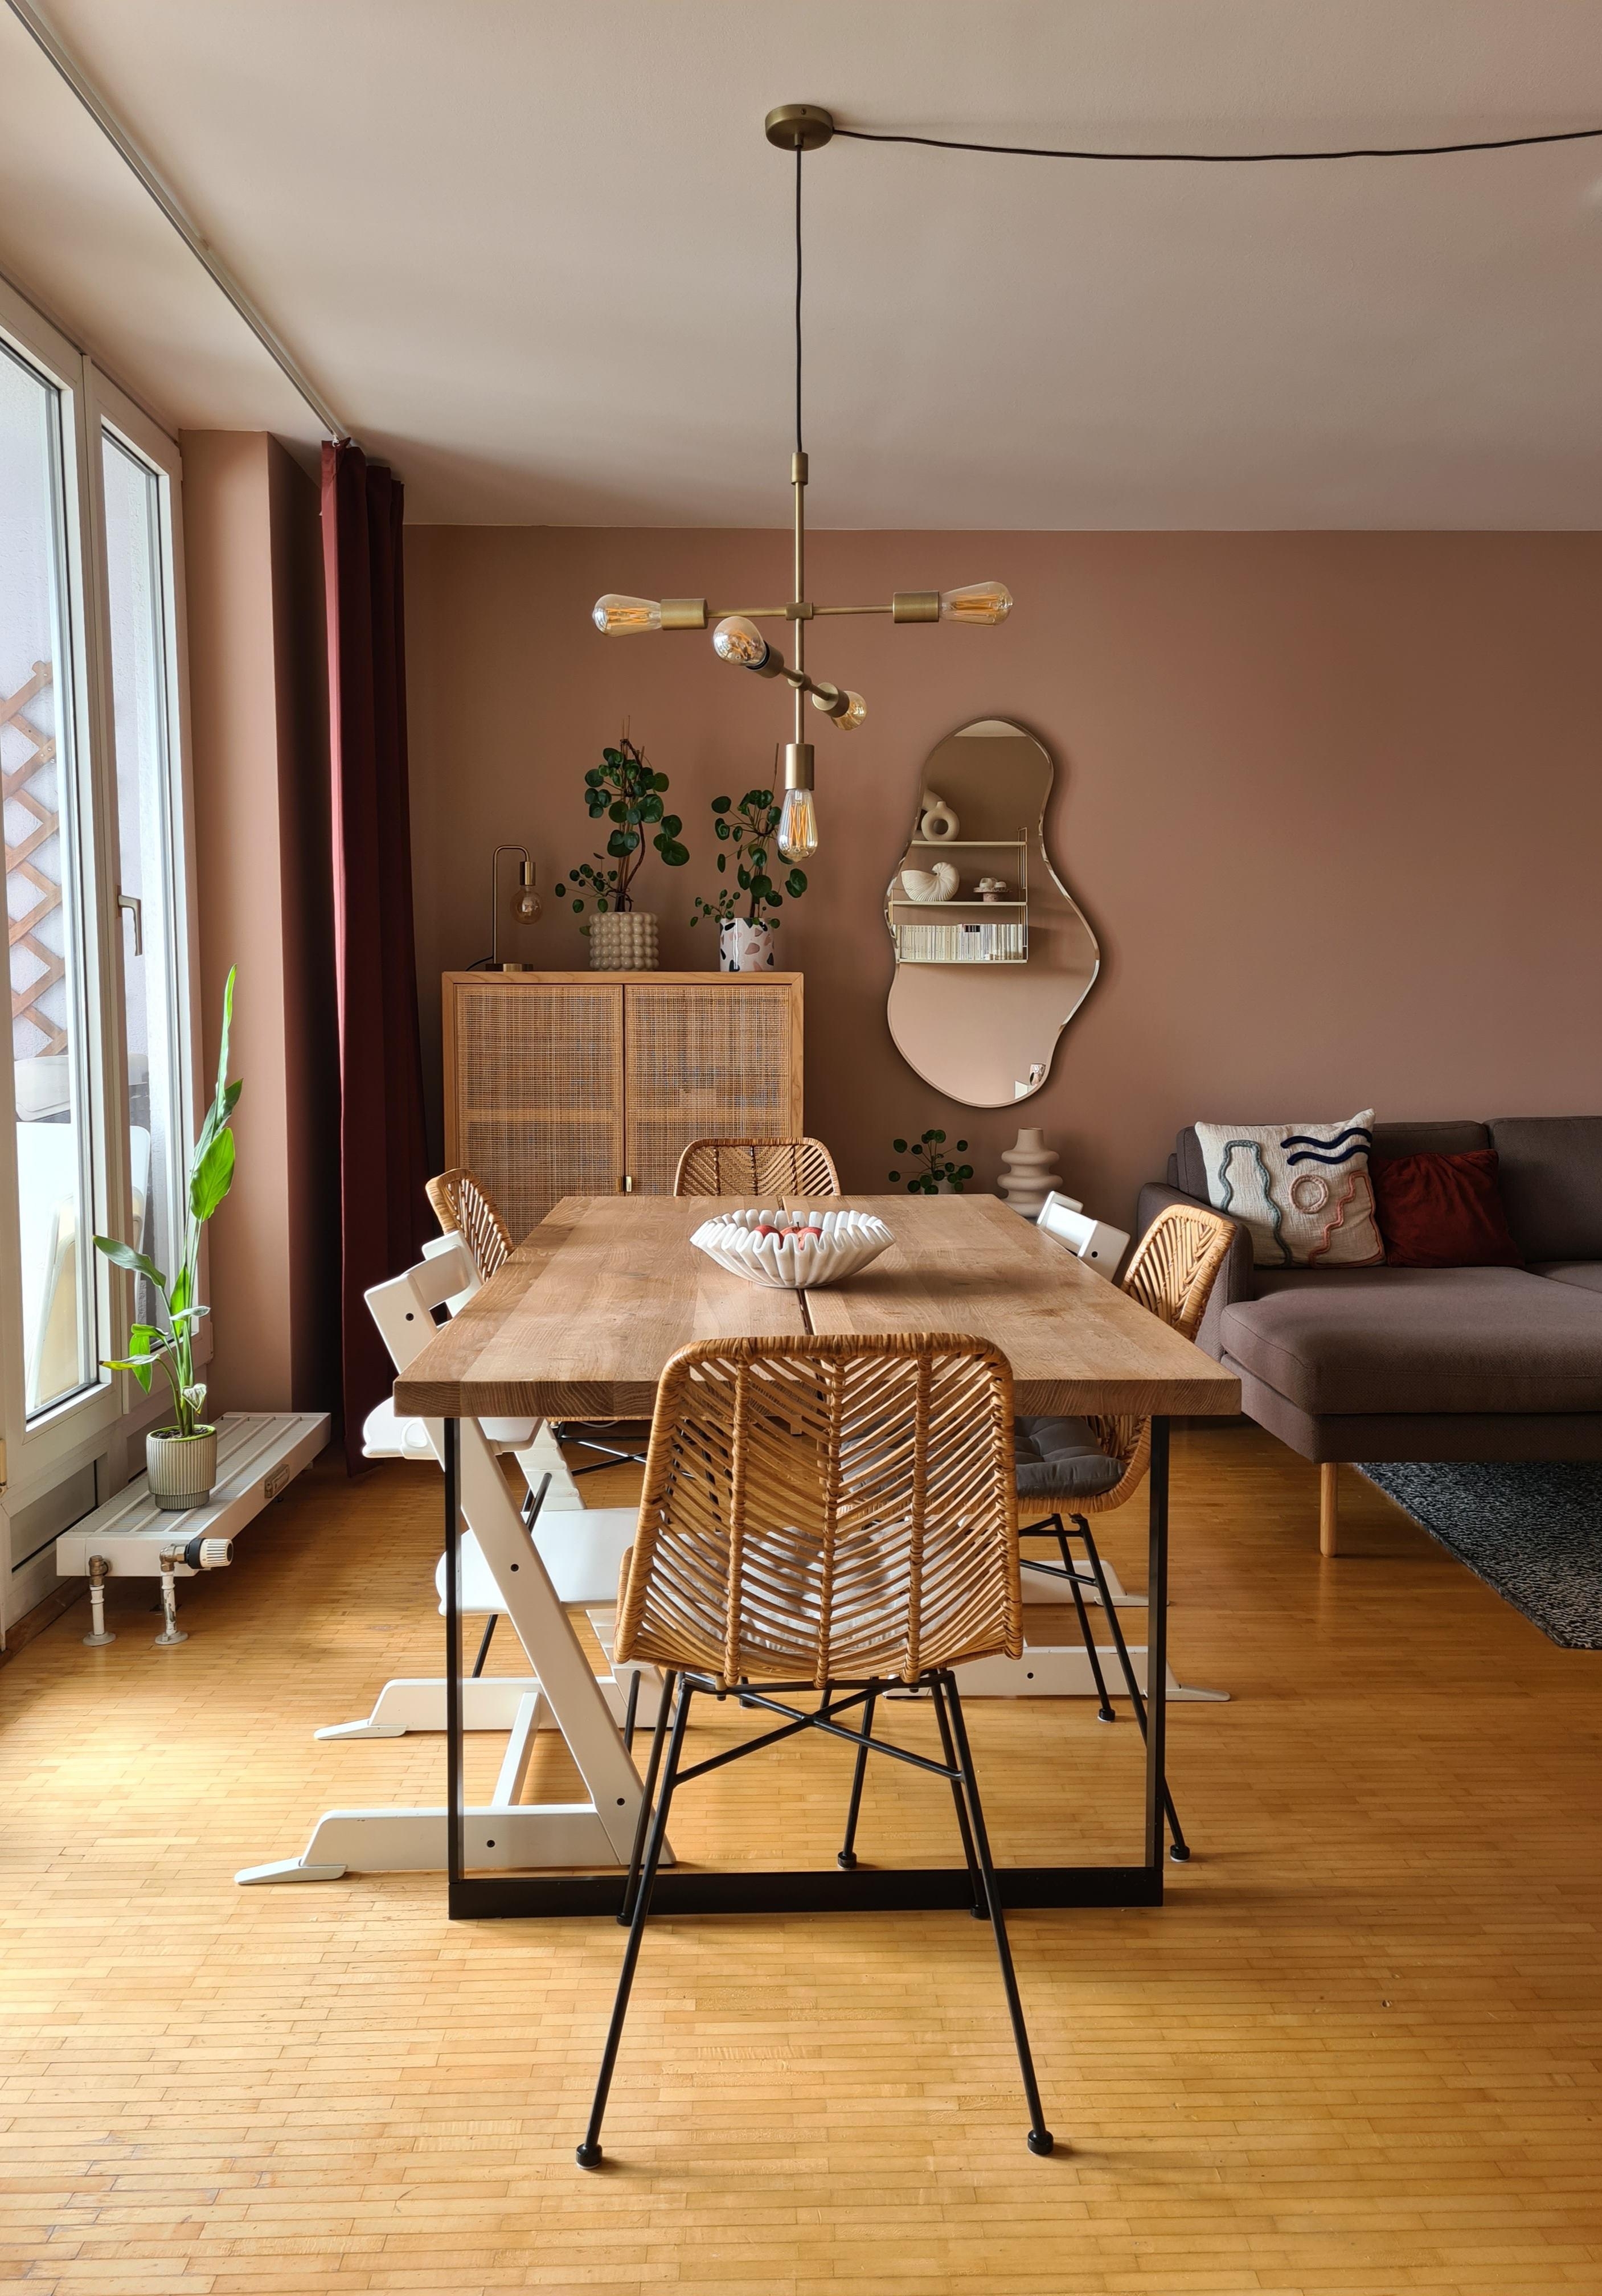 Neue Wandfarbe im Wohnzimmer - von Lachs zu Rosé mit Braunstich.
#wohnzimmer #wandfarbe #esstisch #esszimmer #spiegel #rattanmöbel 